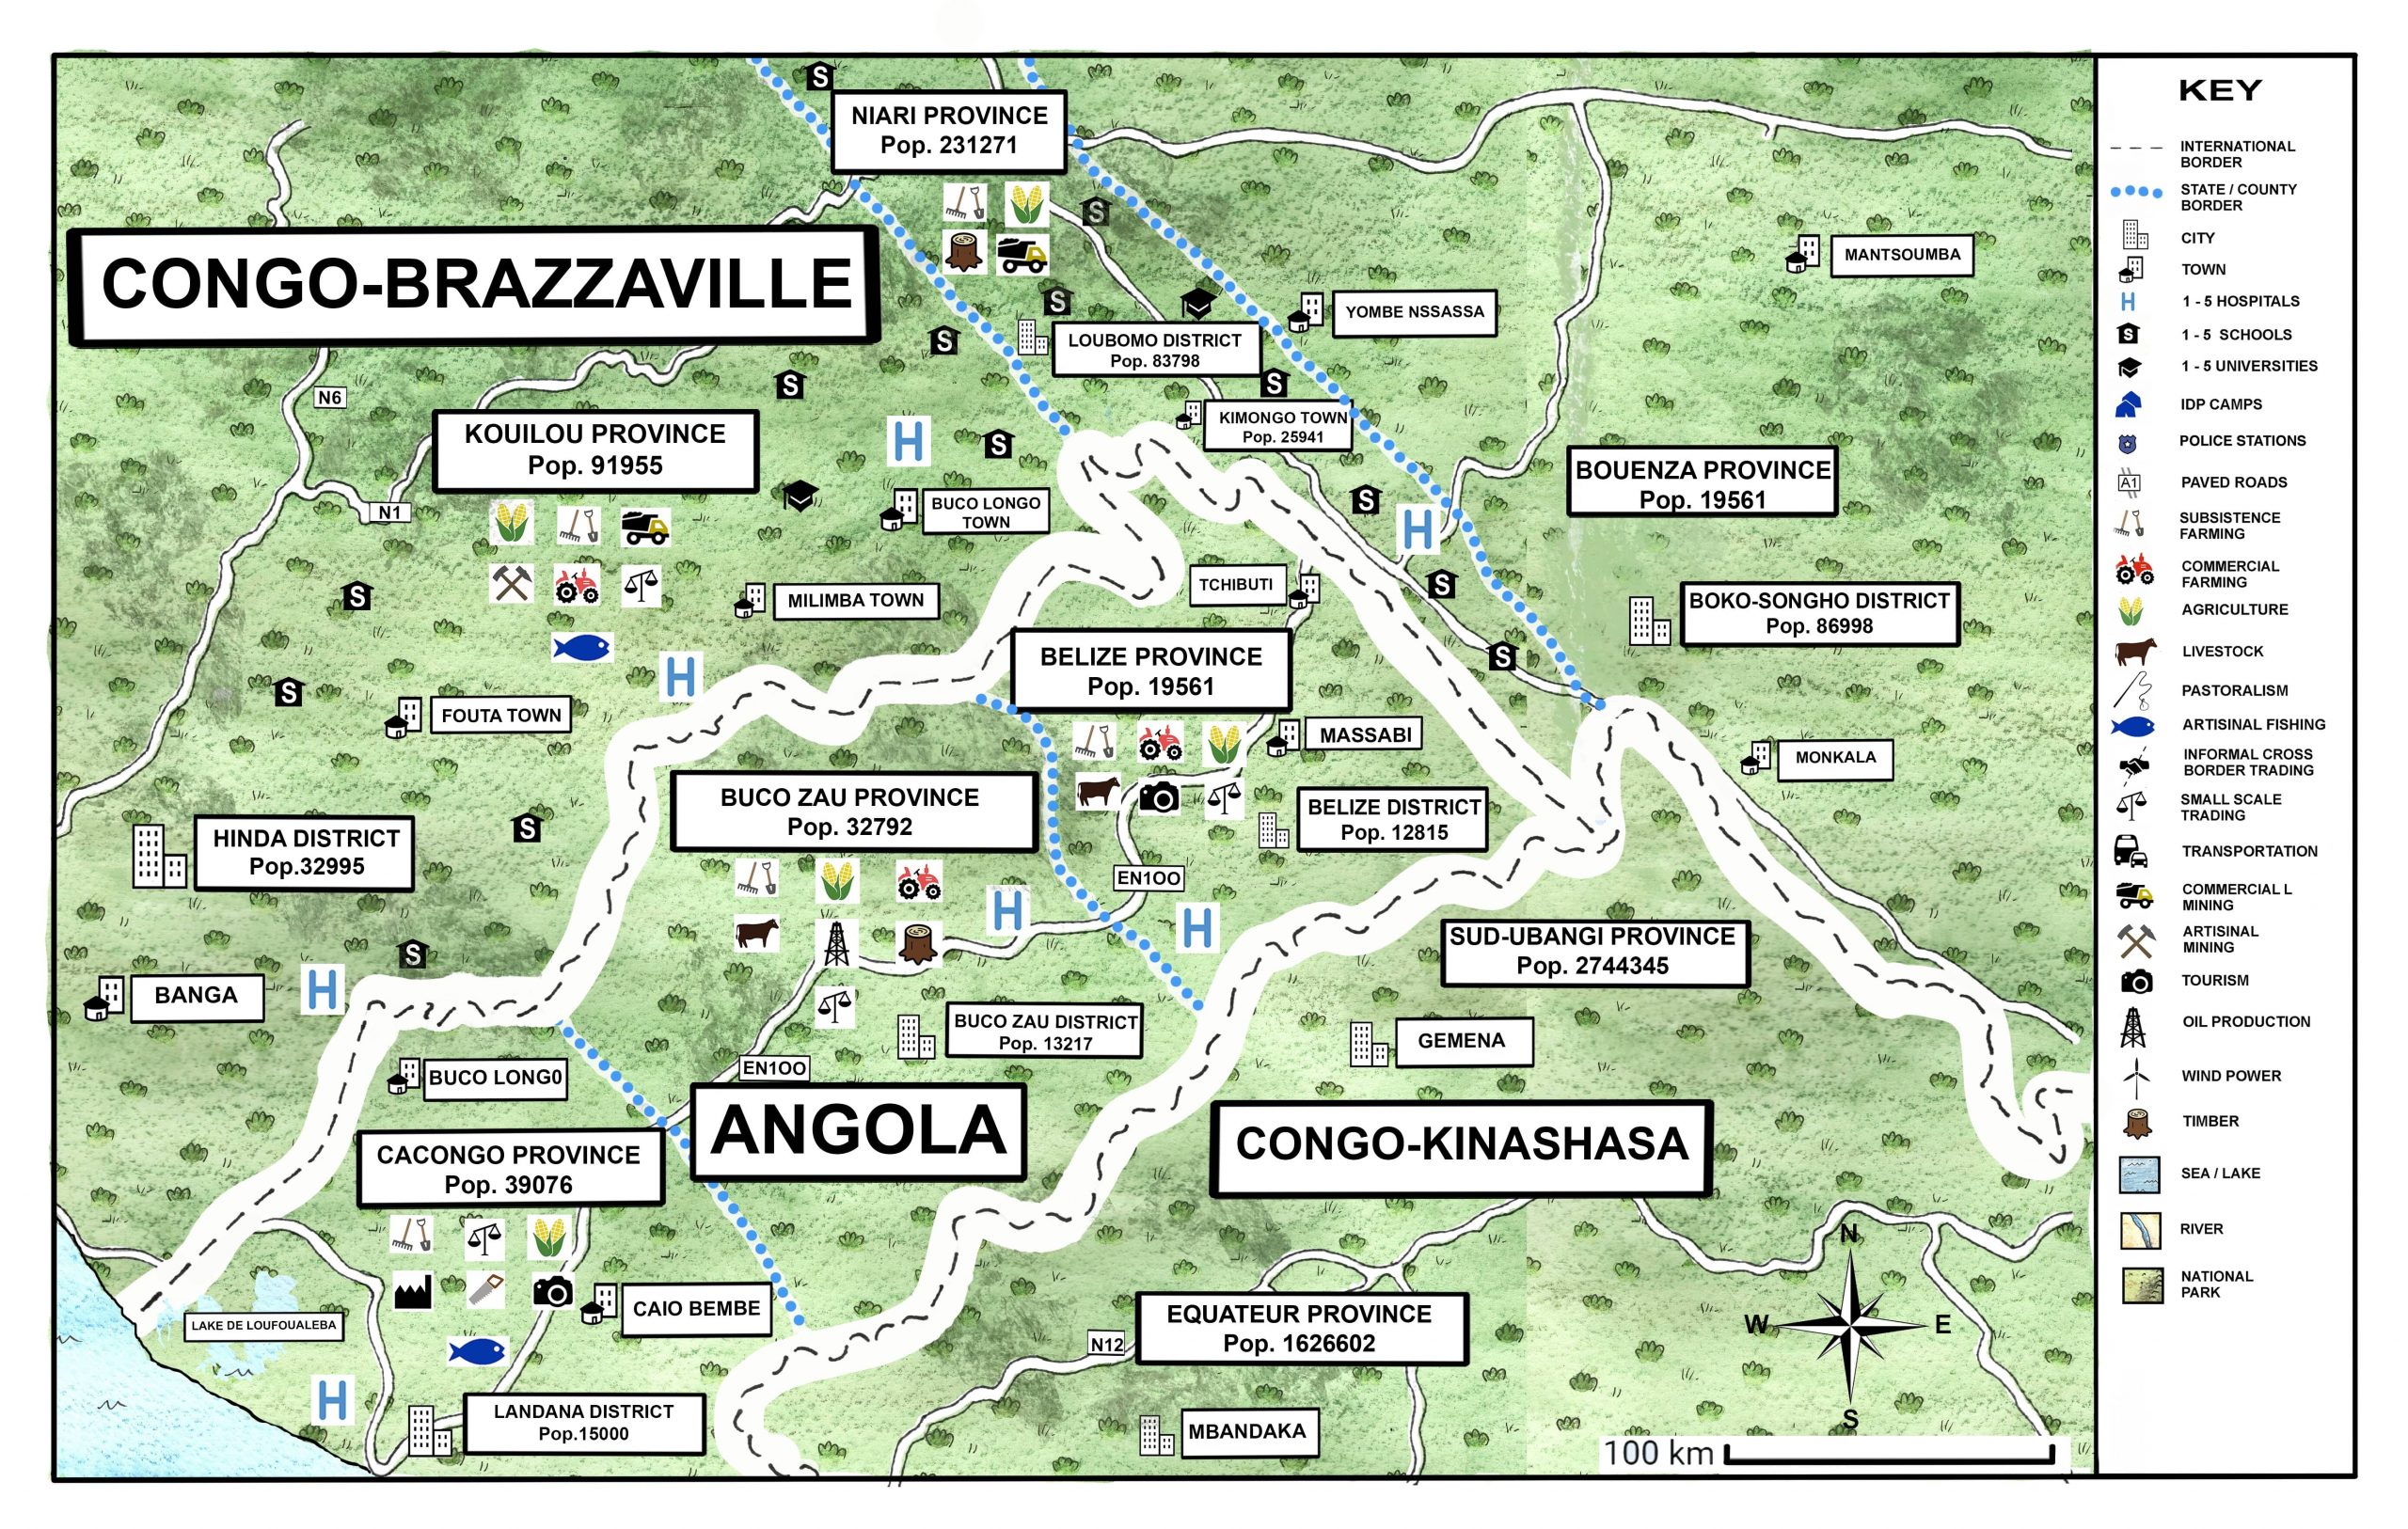 ANGOLA - CONGO-BRAZZAVILLE_illustration